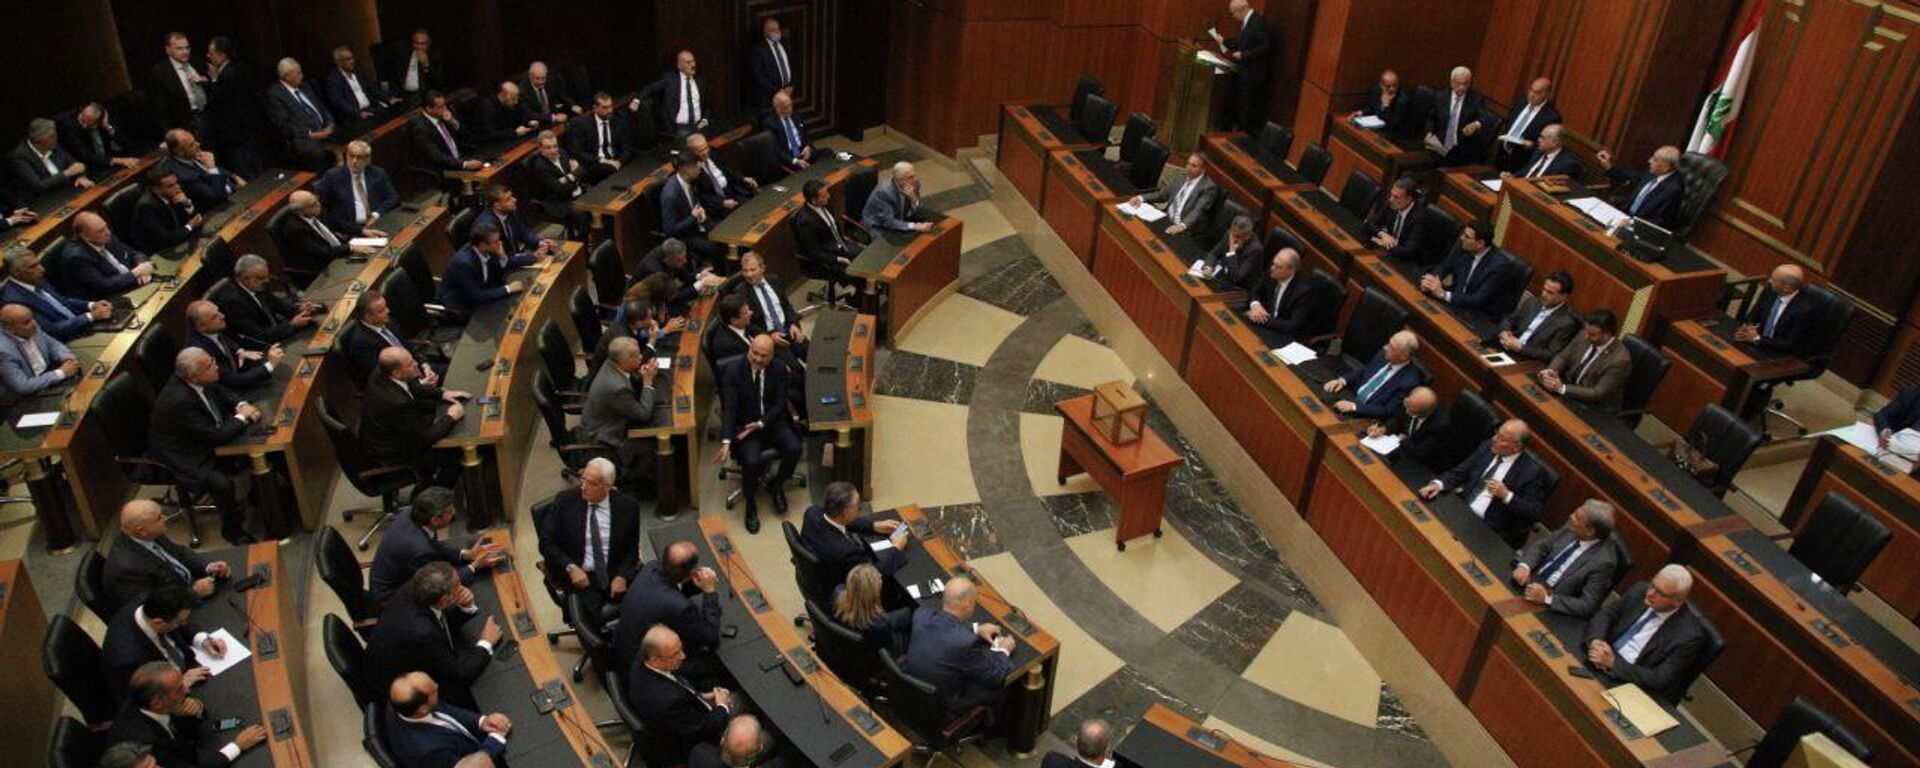 افتتاح جلسة انتخاب رئيس للجمهورية اللبنانية في مجلس النواب، بيروت، لبنان 29 سبتمبر 2022 - سبوتنيك عربي, 1920, 29.09.2022